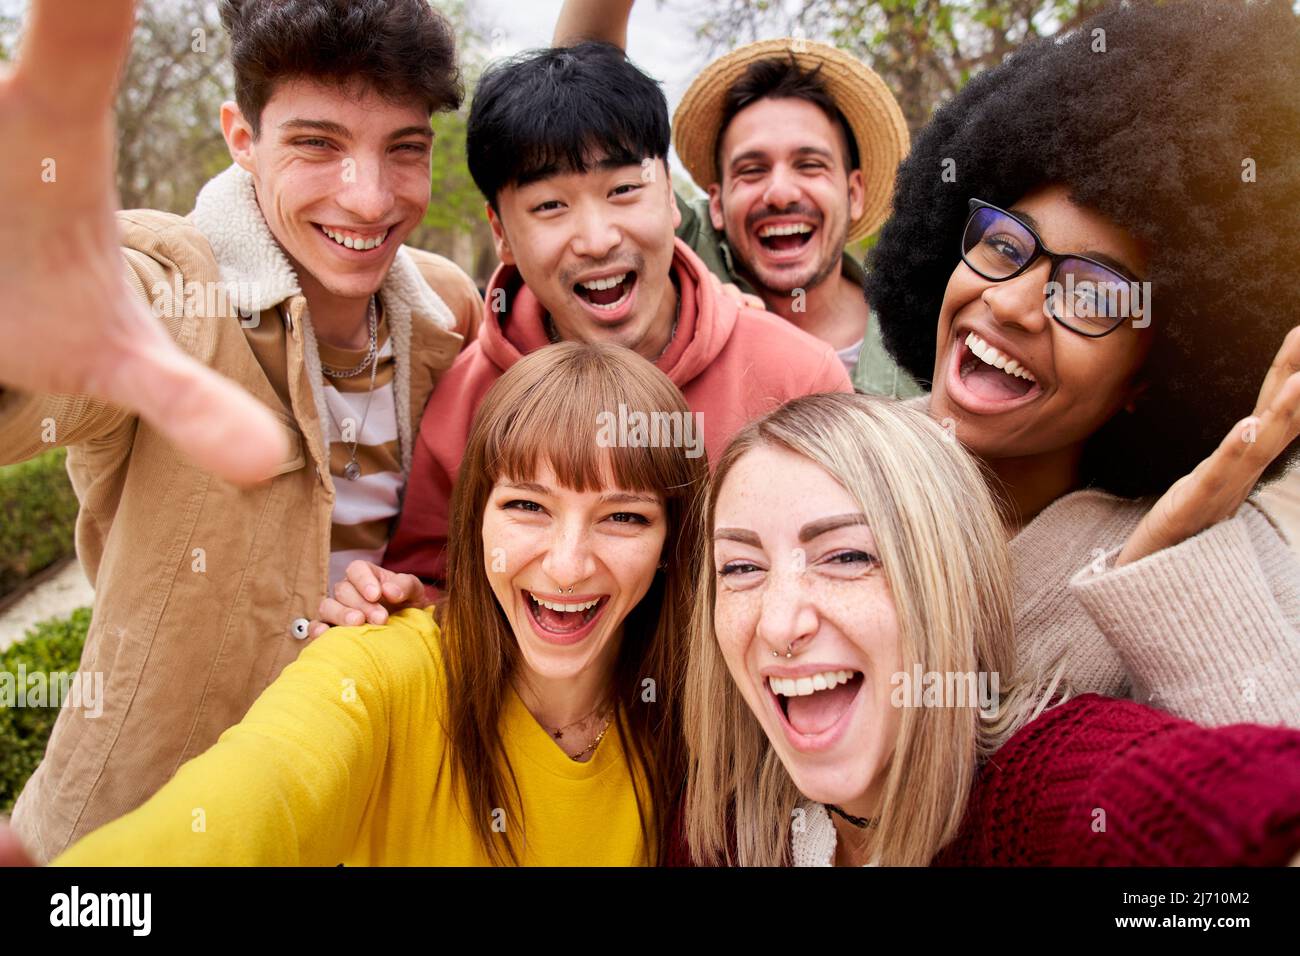 Große Gruppe von fröhlichen jungen Freunden, die Selfie-Portrait machen. Glückliche Menschen, die lächelnd auf die Kamera blicken. Konzept der Gemeinschaft, Jugend Lebensstil und Stockfoto